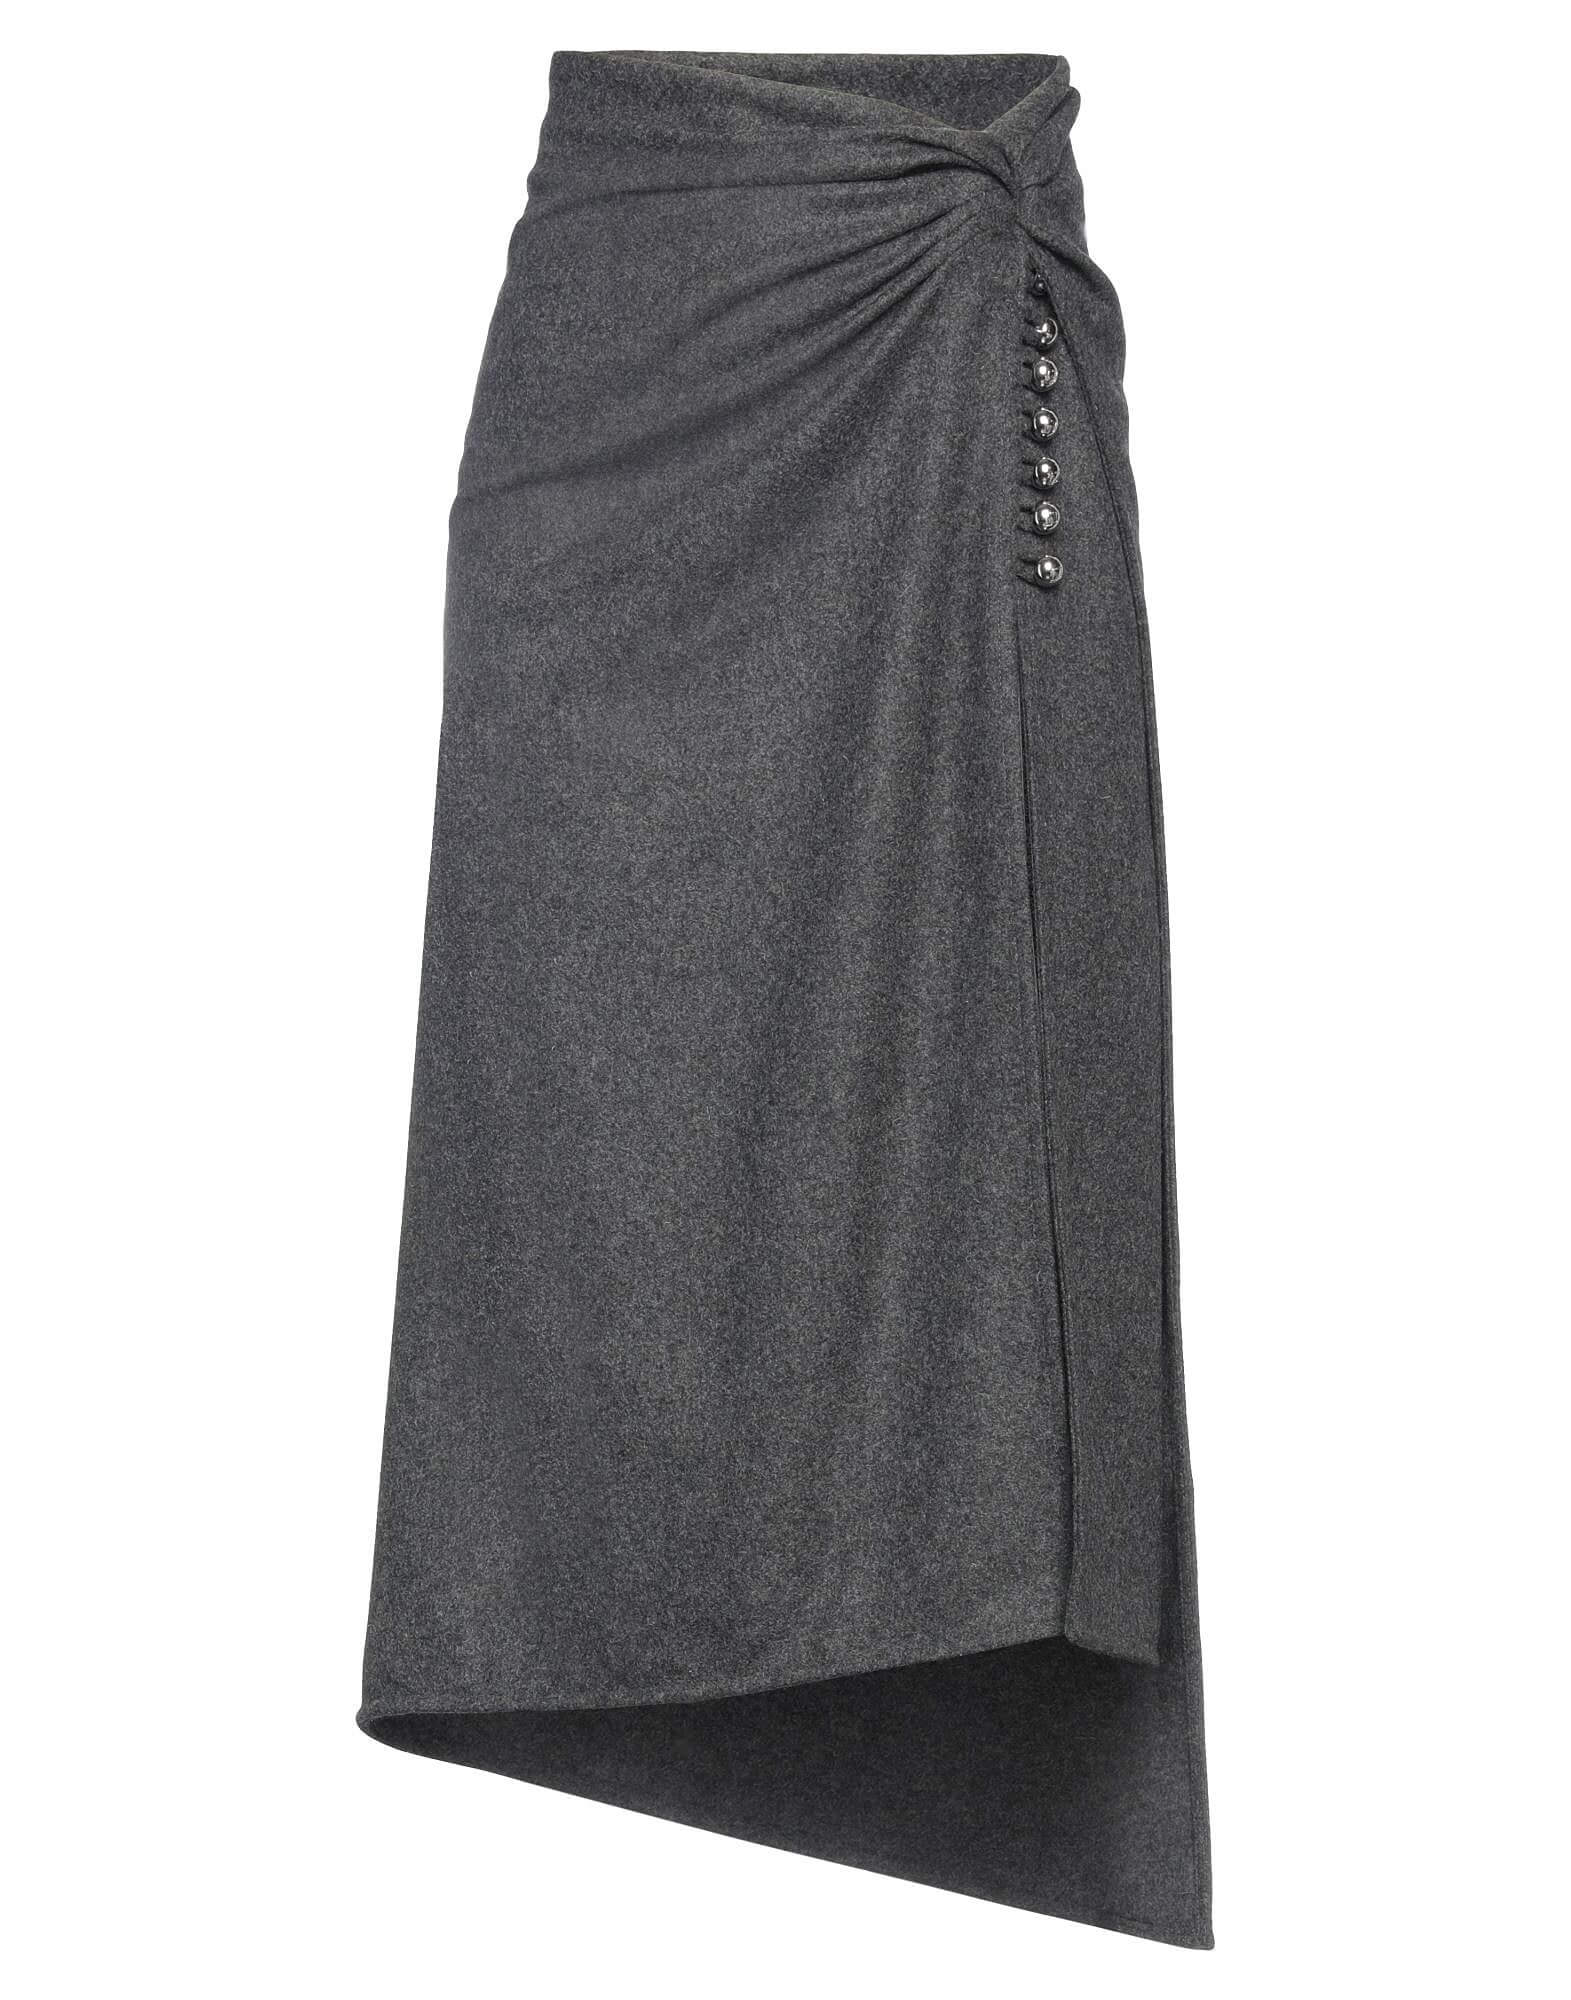 Юбка Paco Rabanne Midi, серый юбка карандаш мамабэль миди размер 50 серый